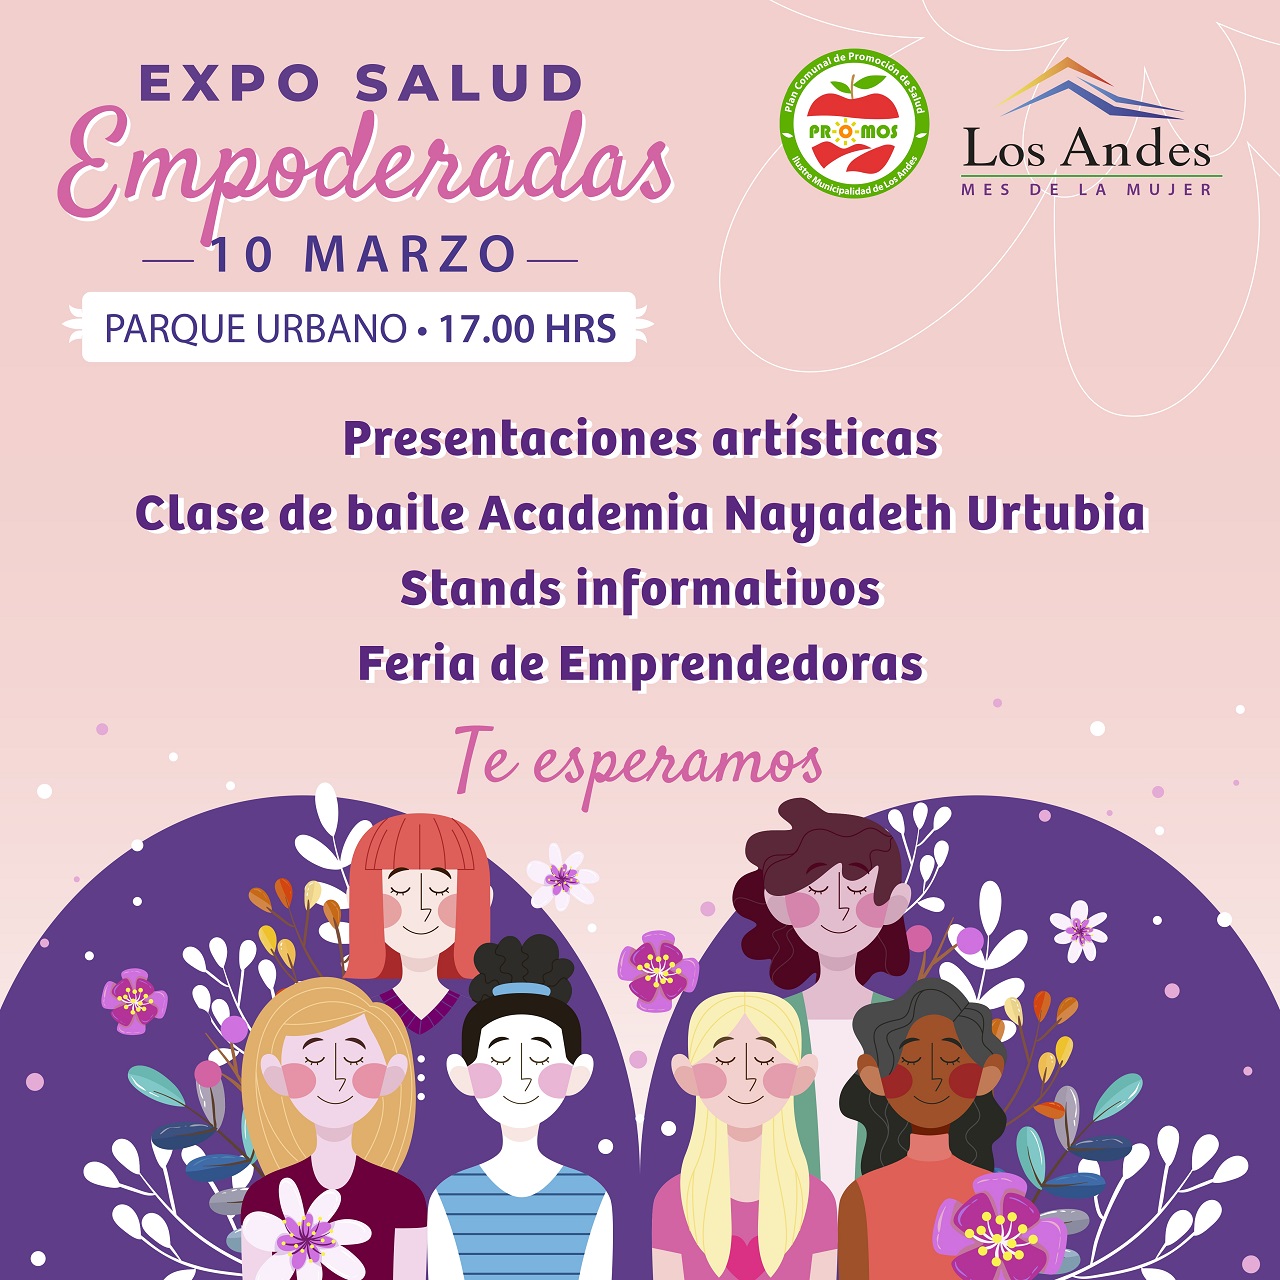 LOS ANDES: [VIDEO] En el Mes de la Mujer invitan a la Expo Salud “Empoderadas”